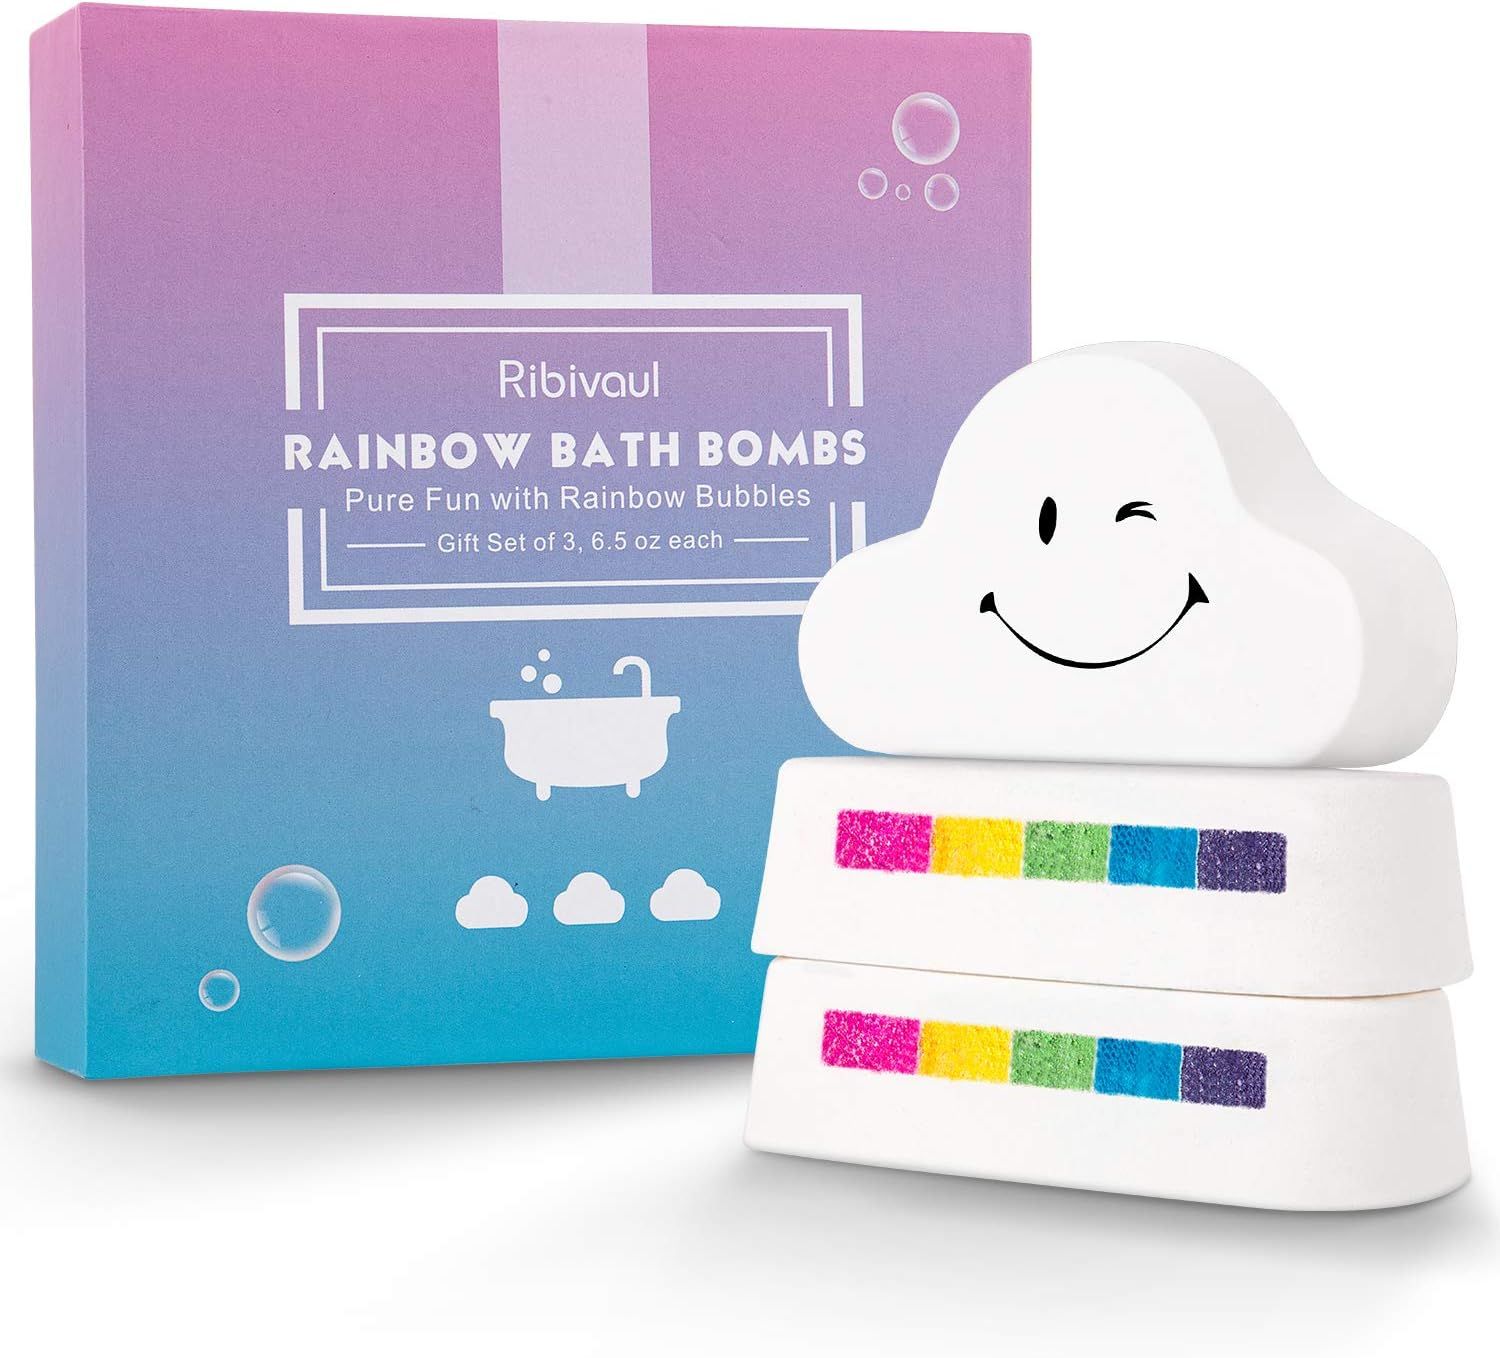 Bath Bombs Gift Set, Ribivaul Rainbow Bath Bombs XXXL Size 6.5 oz ×3 Handmade Bath Bombs with Na... | Amazon (US)